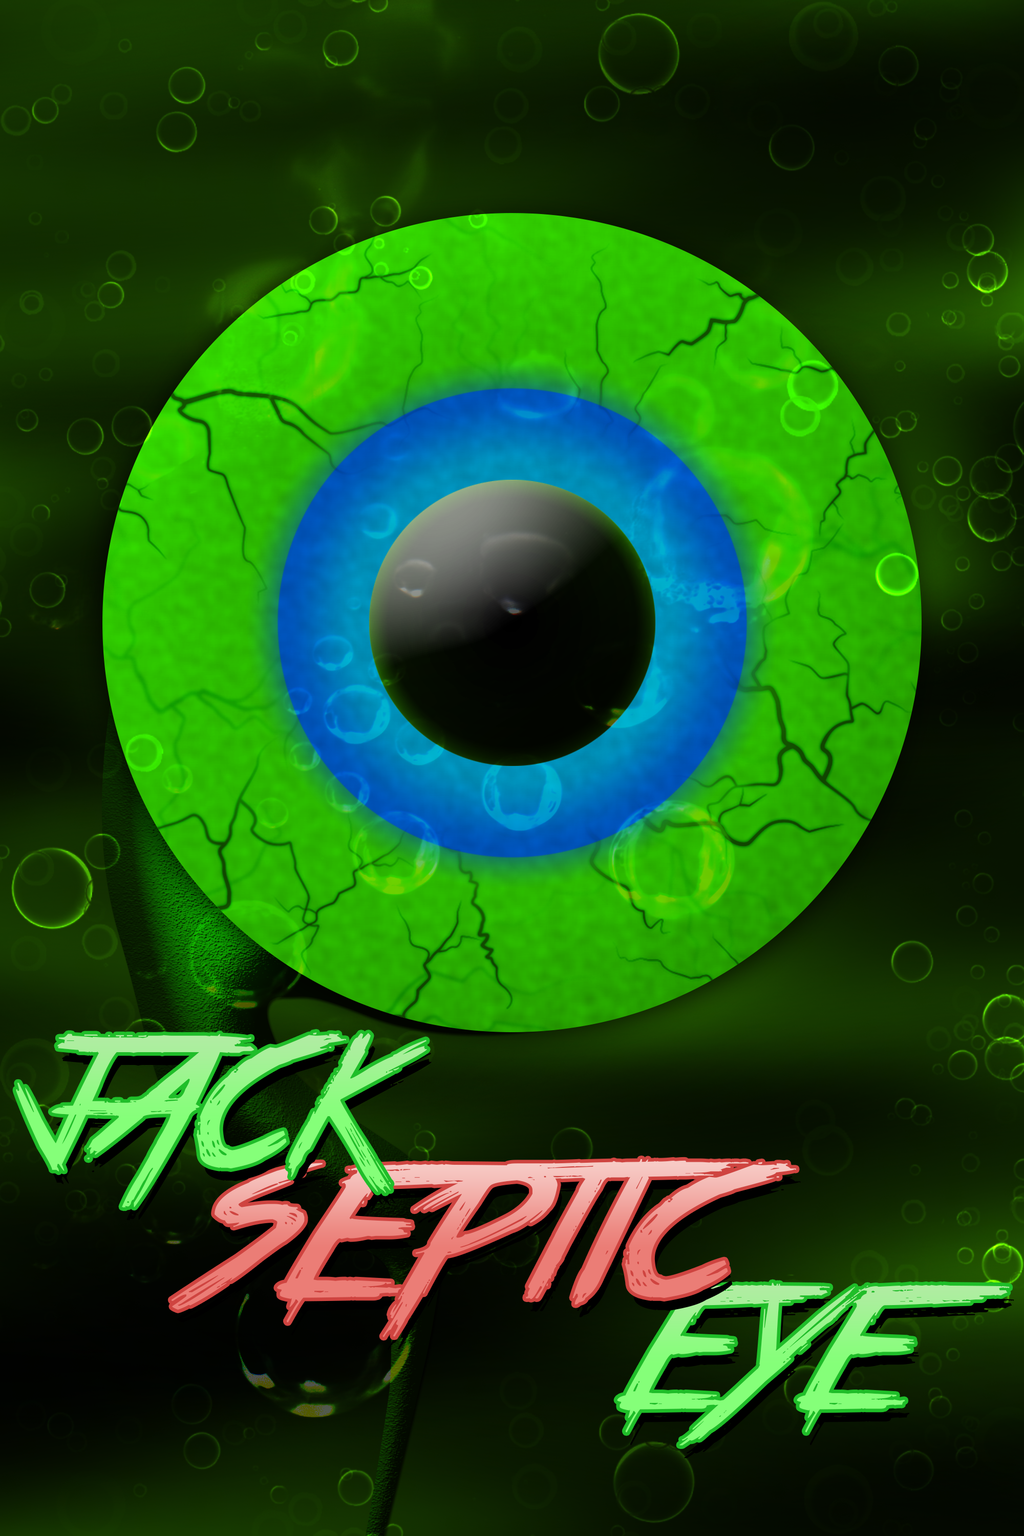 JackSepticEye Fan Art Poster. Jacksepticeye wallpaper, Jacksepticeye fan art, Jacksepticeye